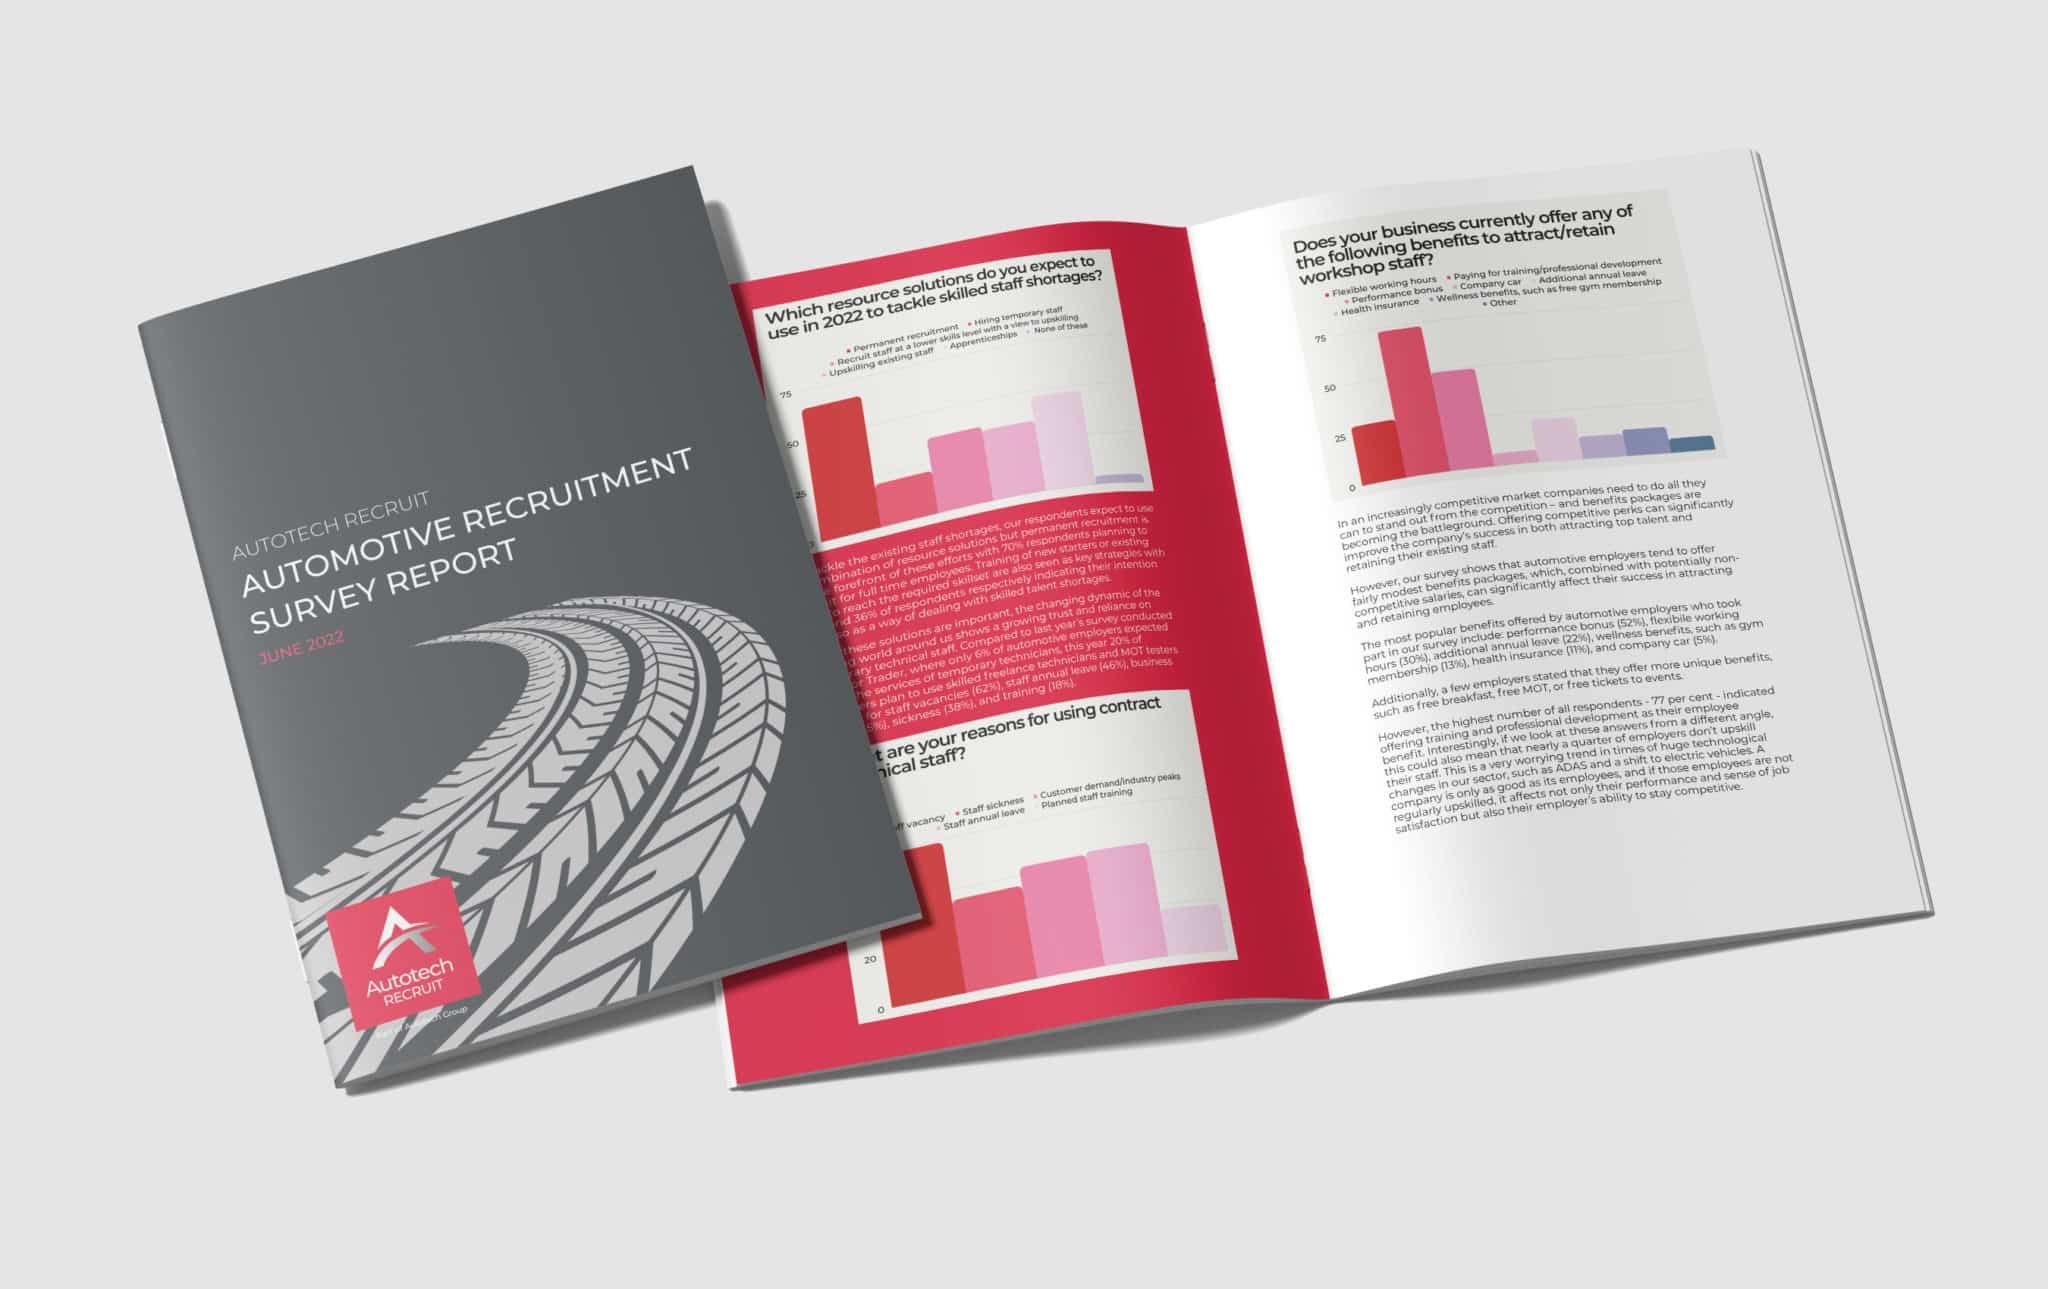 Automotive Recruitment Survey 2022 brochure